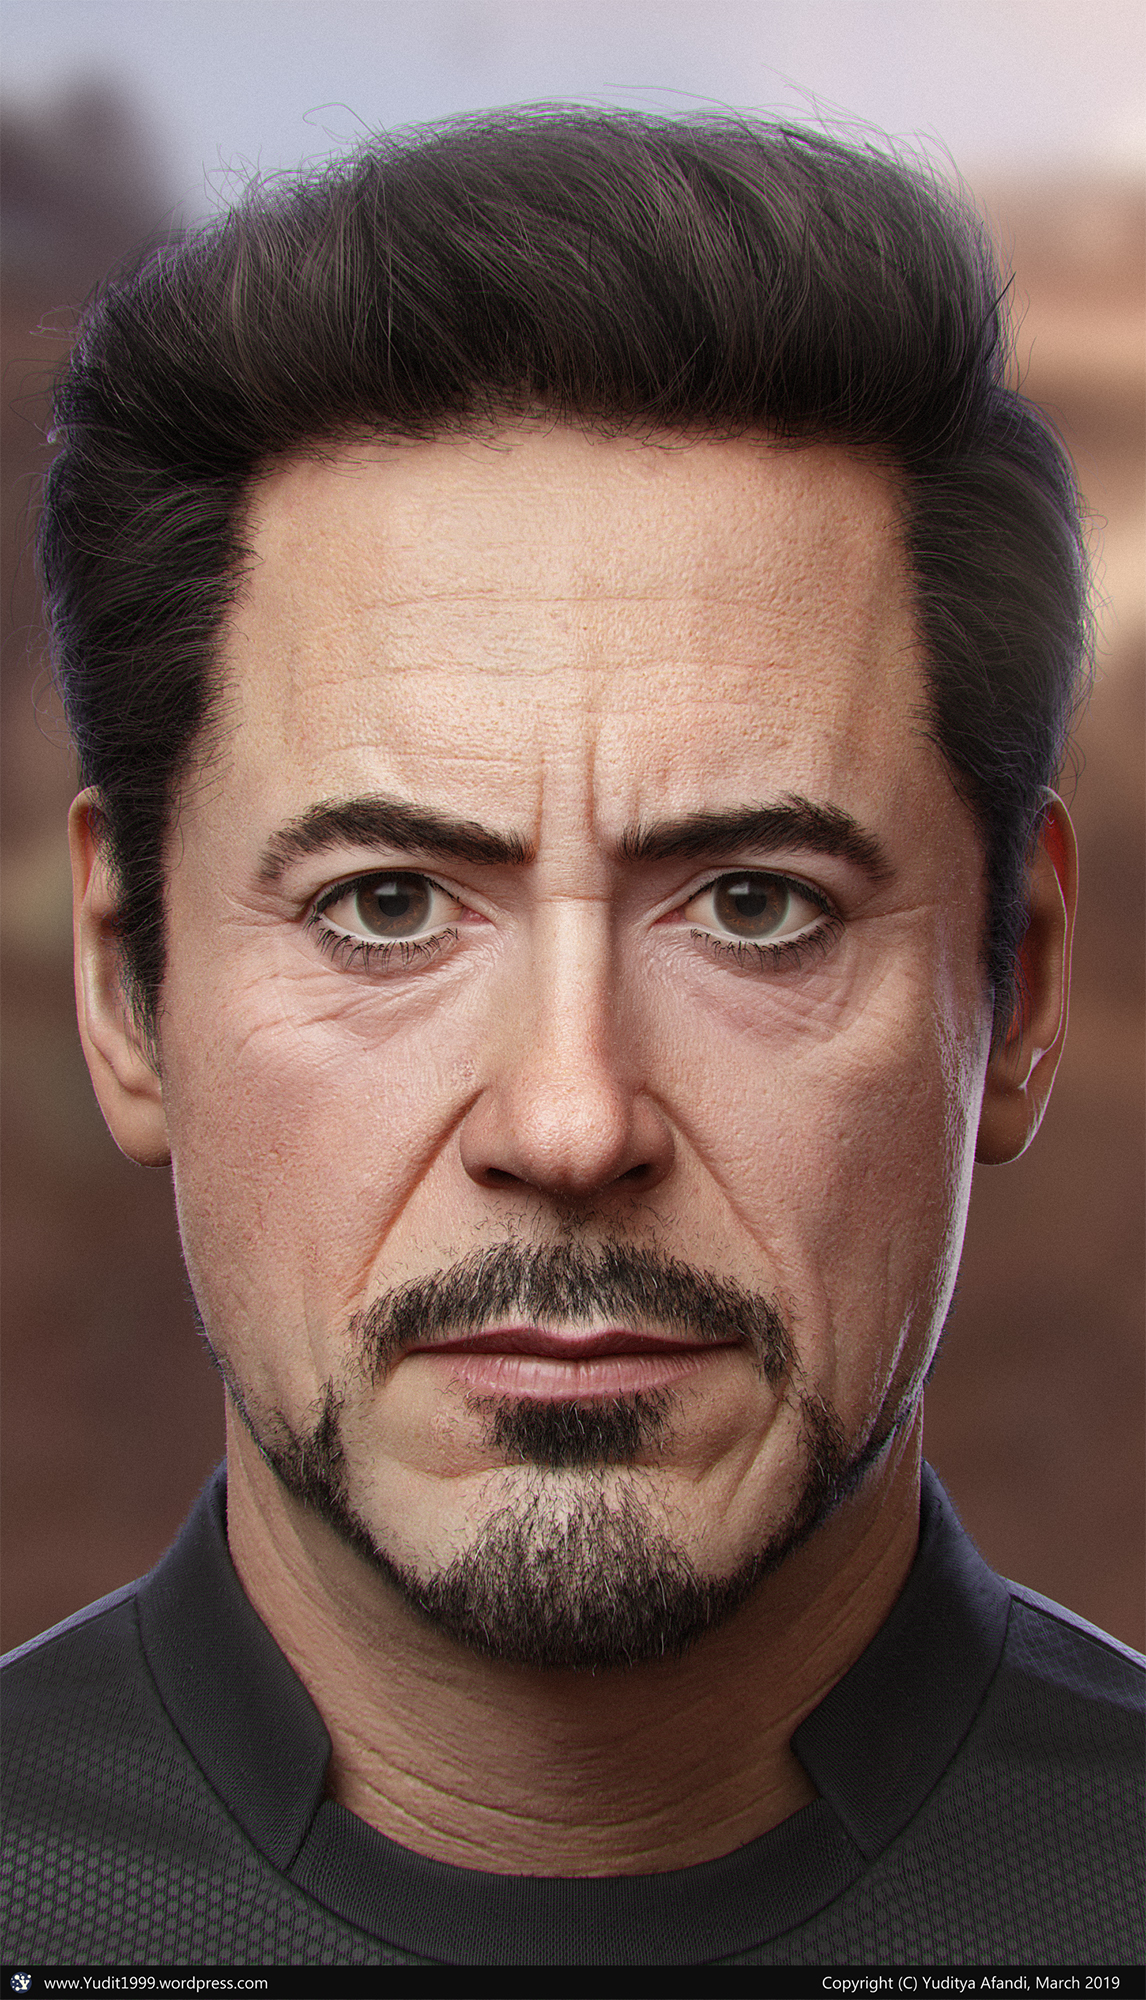 The beard of Tony Stark added a  The beard of Tony Stark